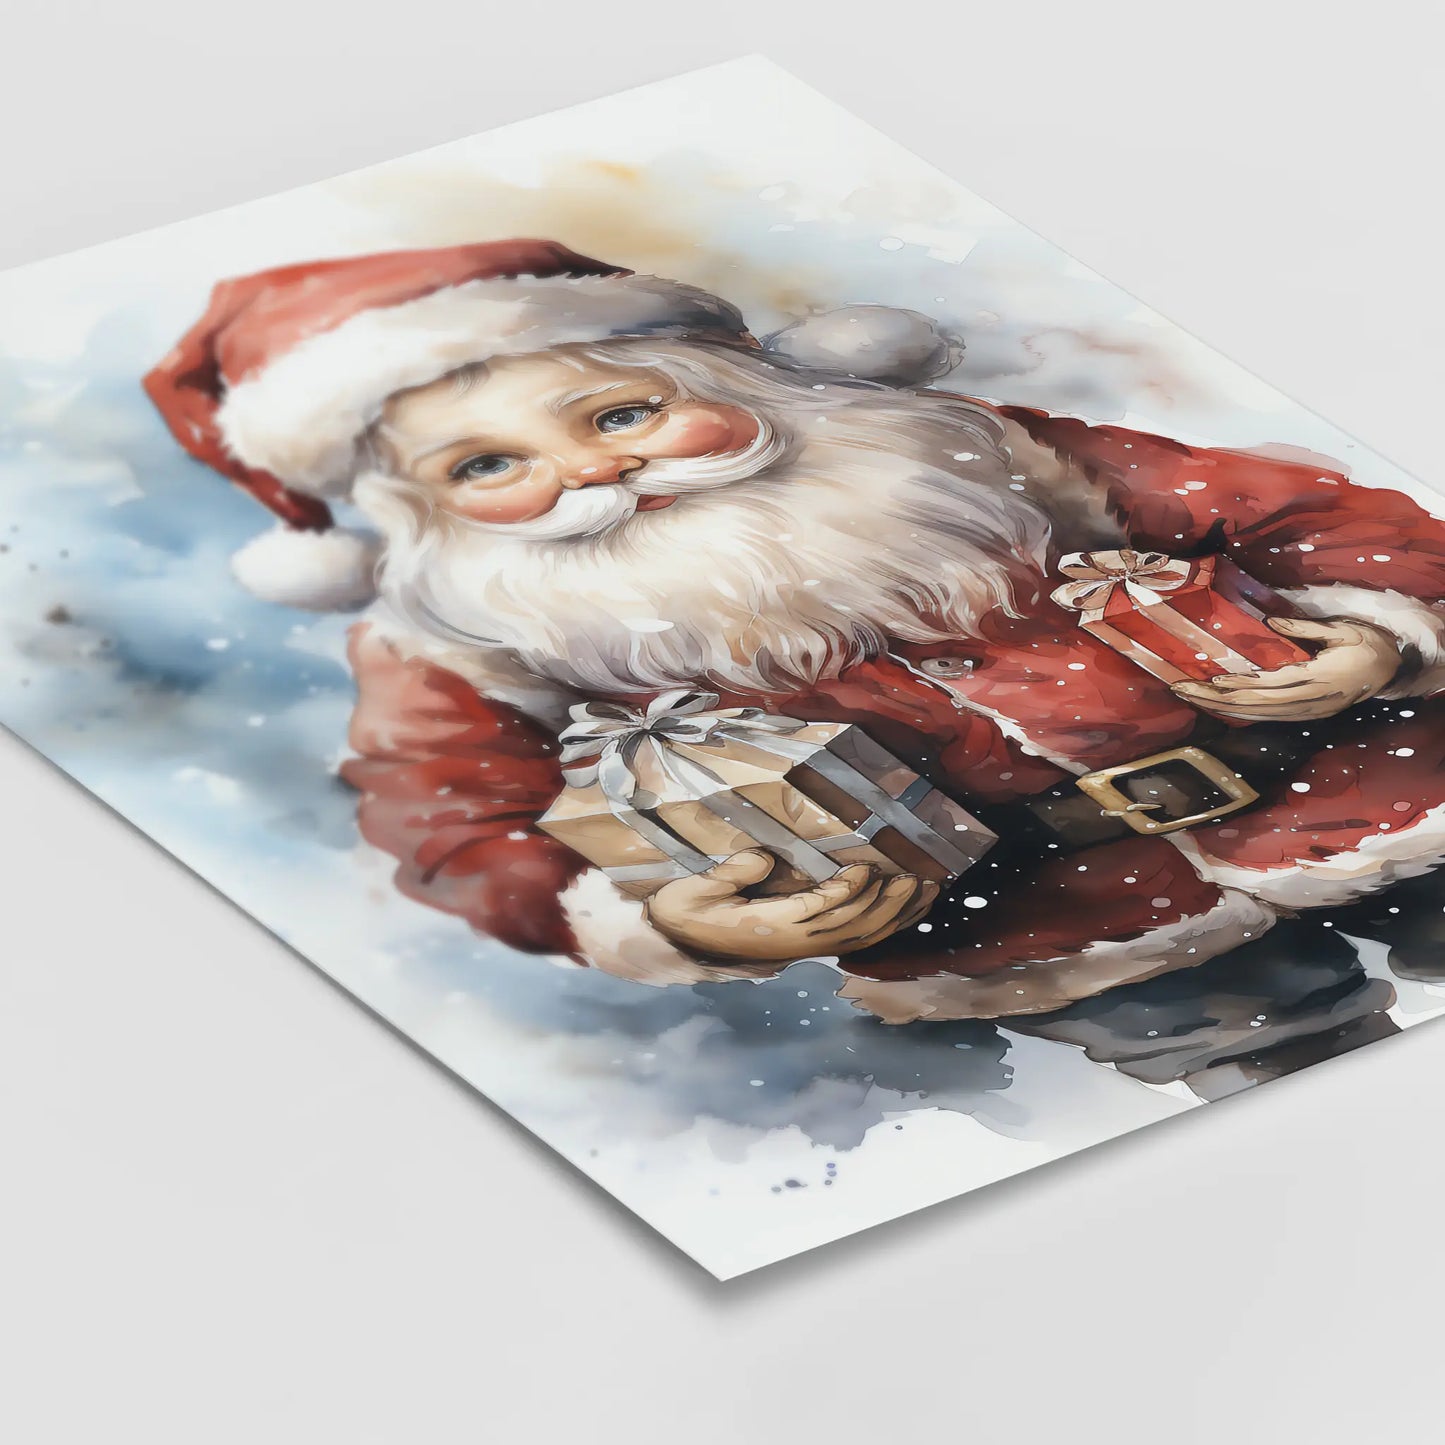 Weihnachtsmann No 9 - Weihnachten - Santa Claus - Poster